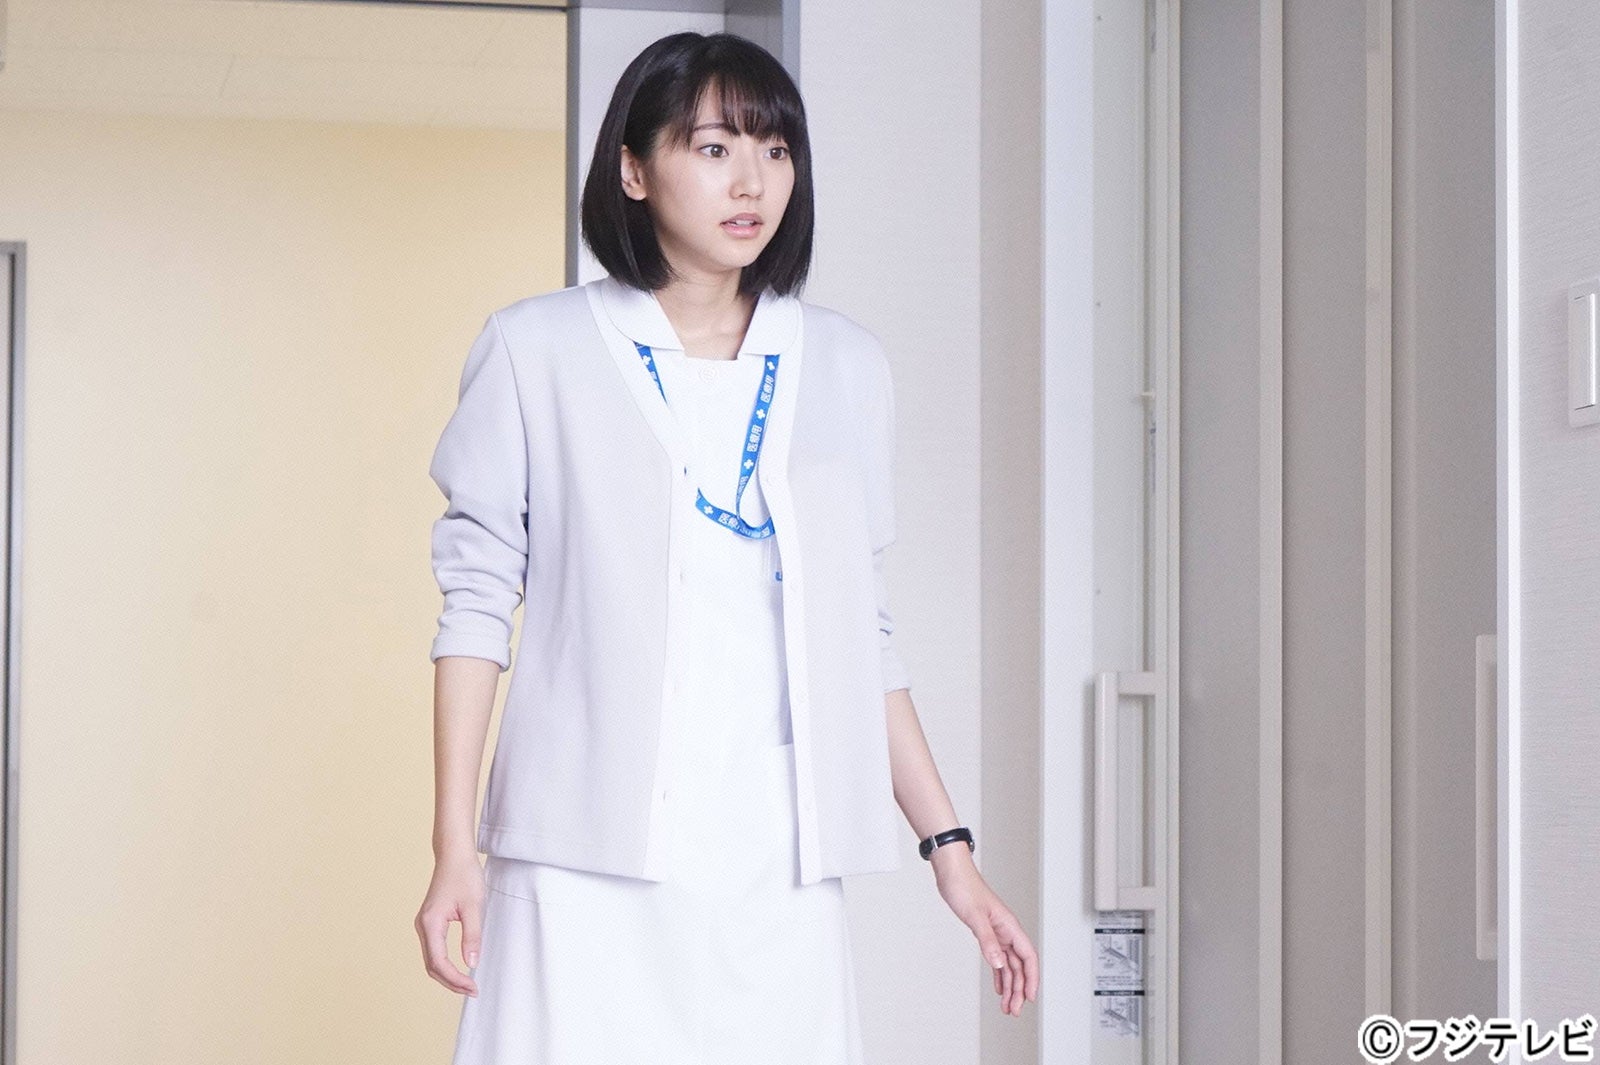 月9 ラヴソング 武田玲奈のナース姿に反響 可愛い 白衣の天使 コメント到着 モデルプレス